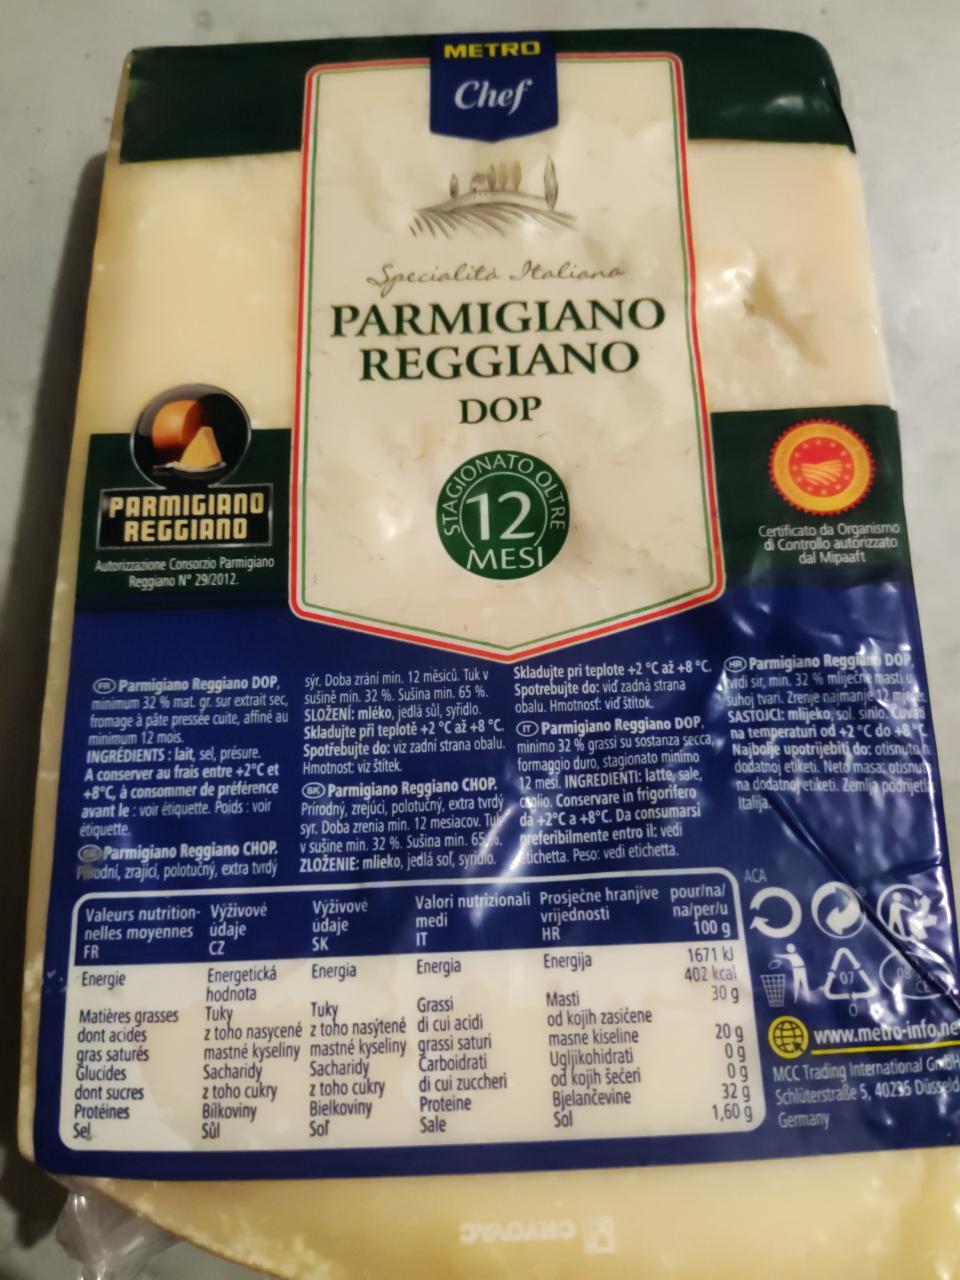 Fotografie - Parmigiano Reggiano DOP Metro Chef